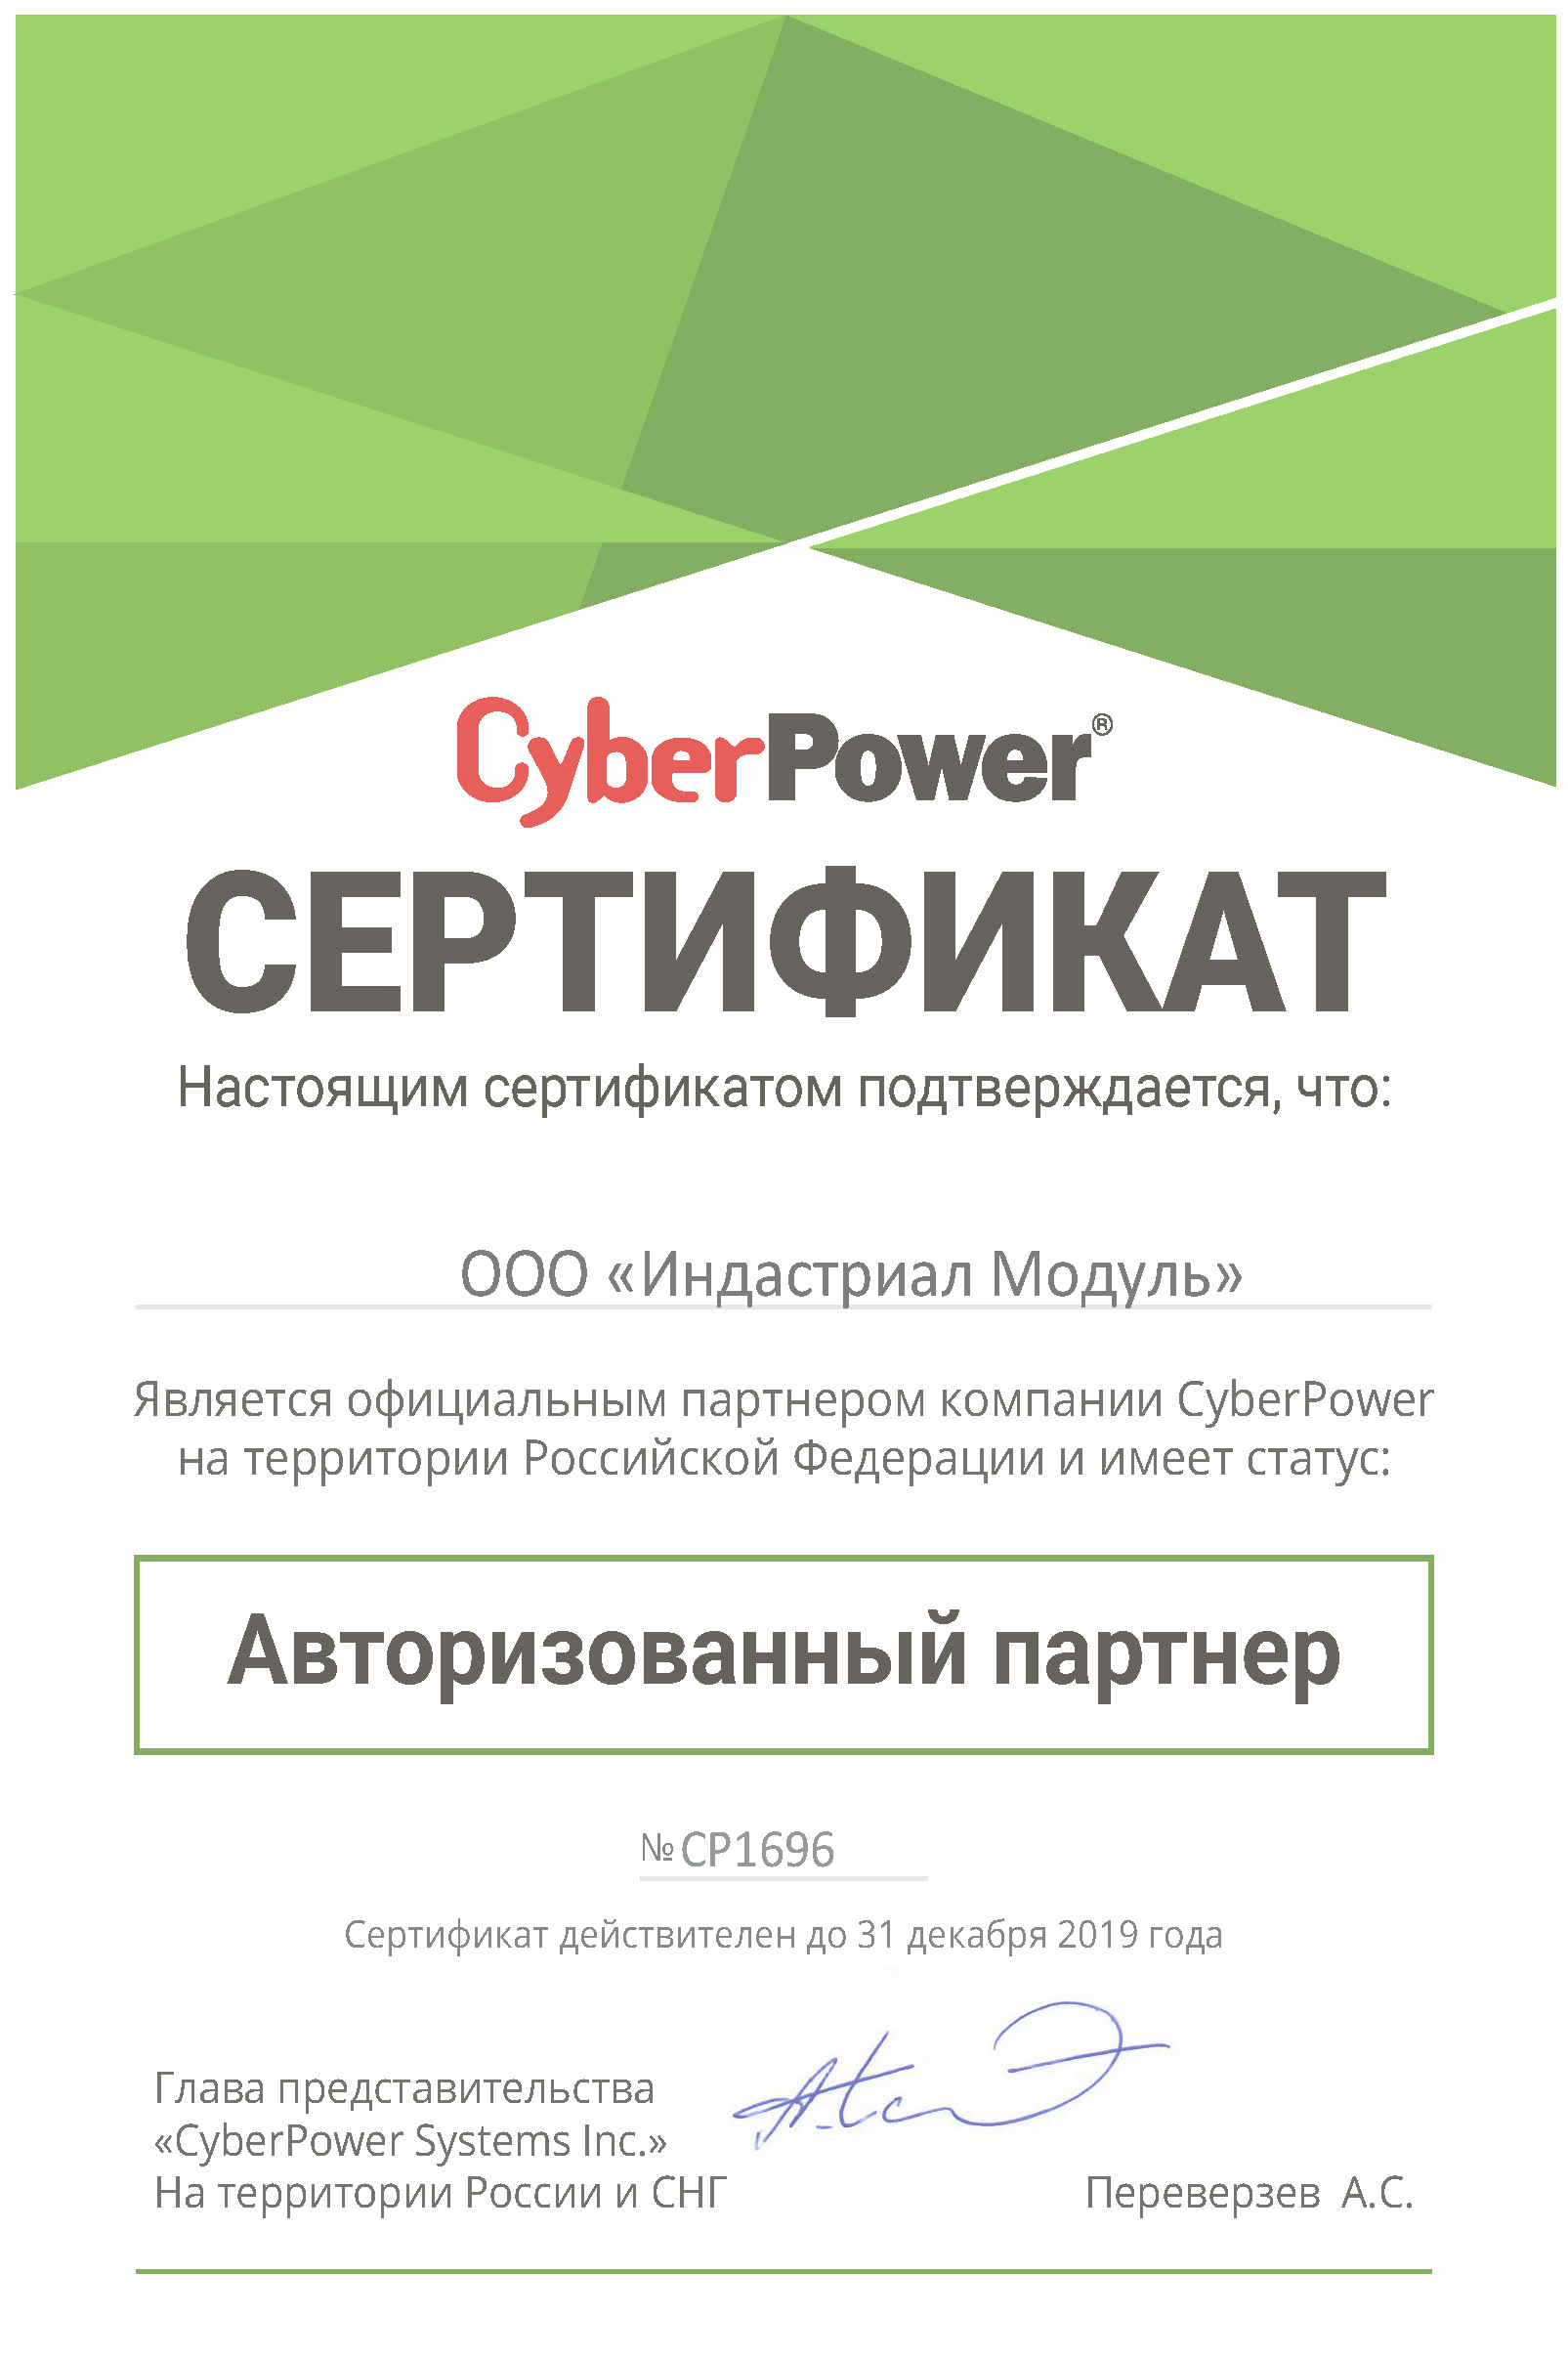 Индастриал Модуль партнер CyberPower